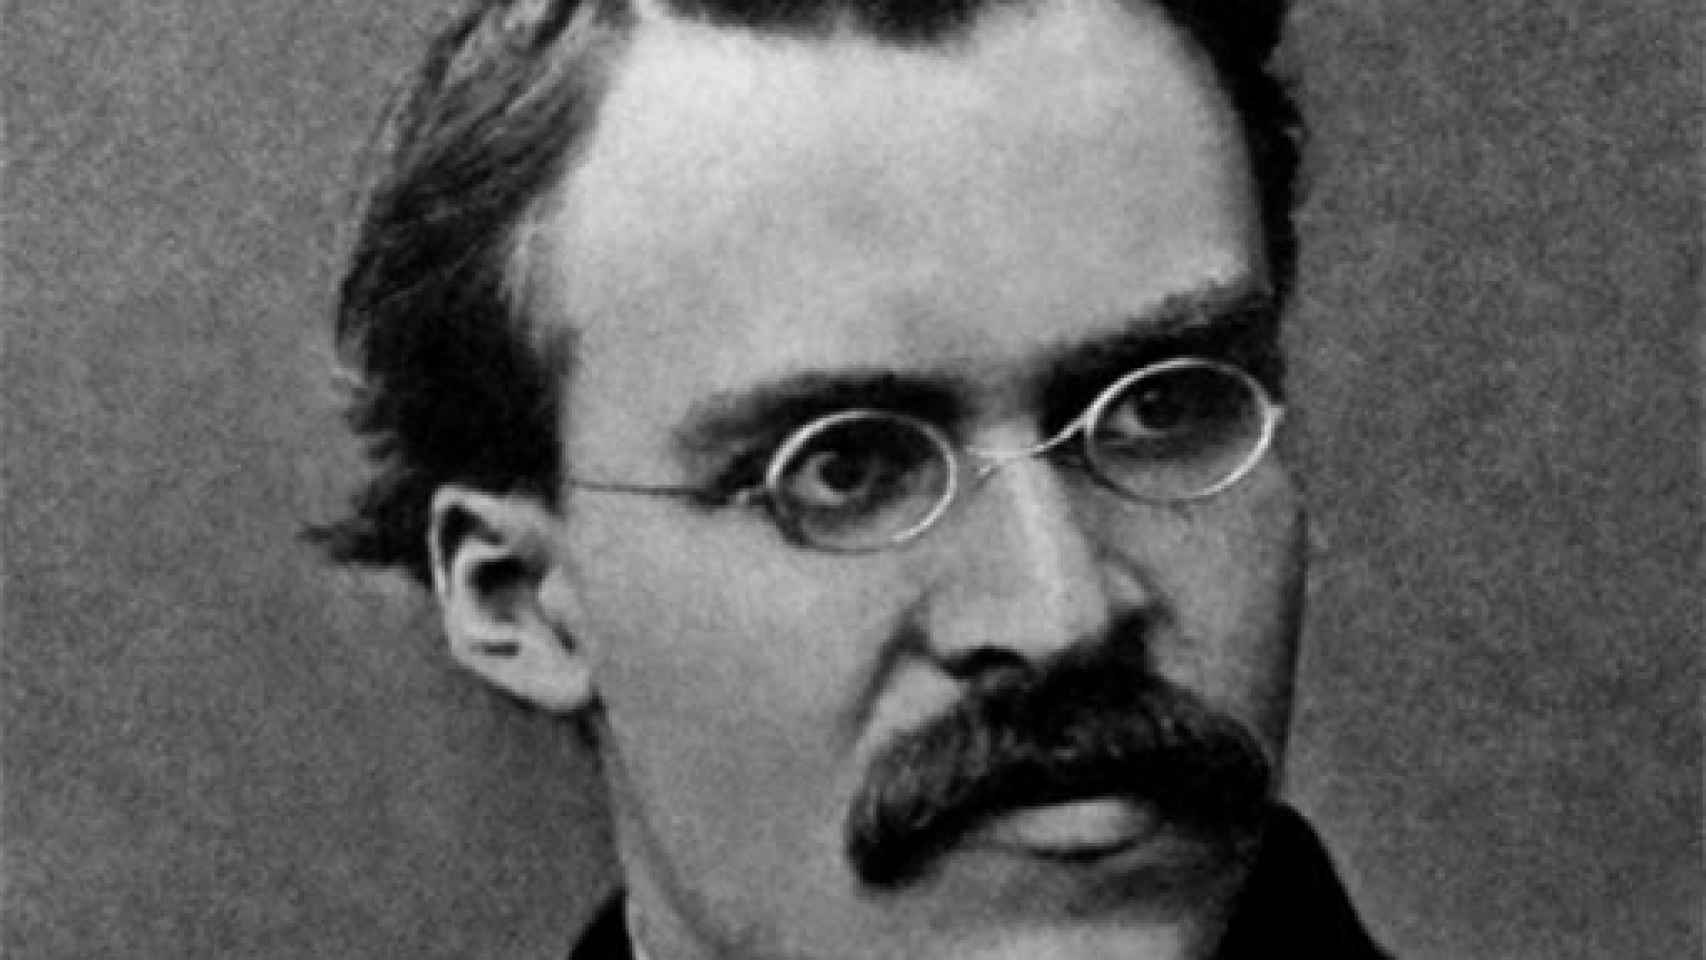 Image: Nietzsche vs Wagner, duelo en la Juan March